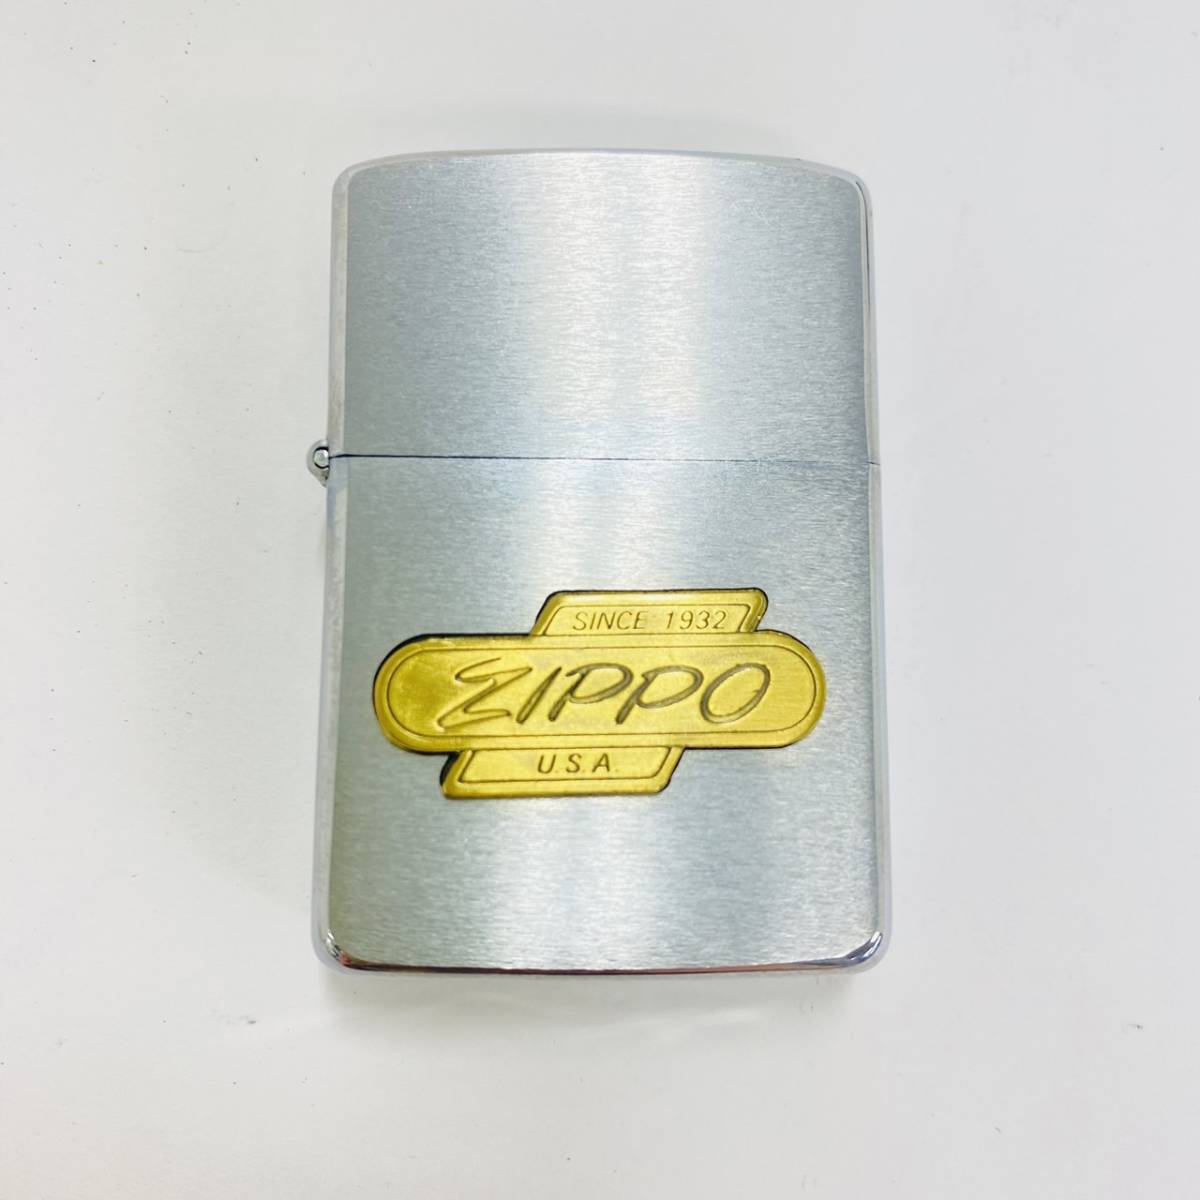 13710/ZIPPO ジッポー U.S.A. SINCE 1932 喫煙具 シルバー 銀 ゴールド_画像2